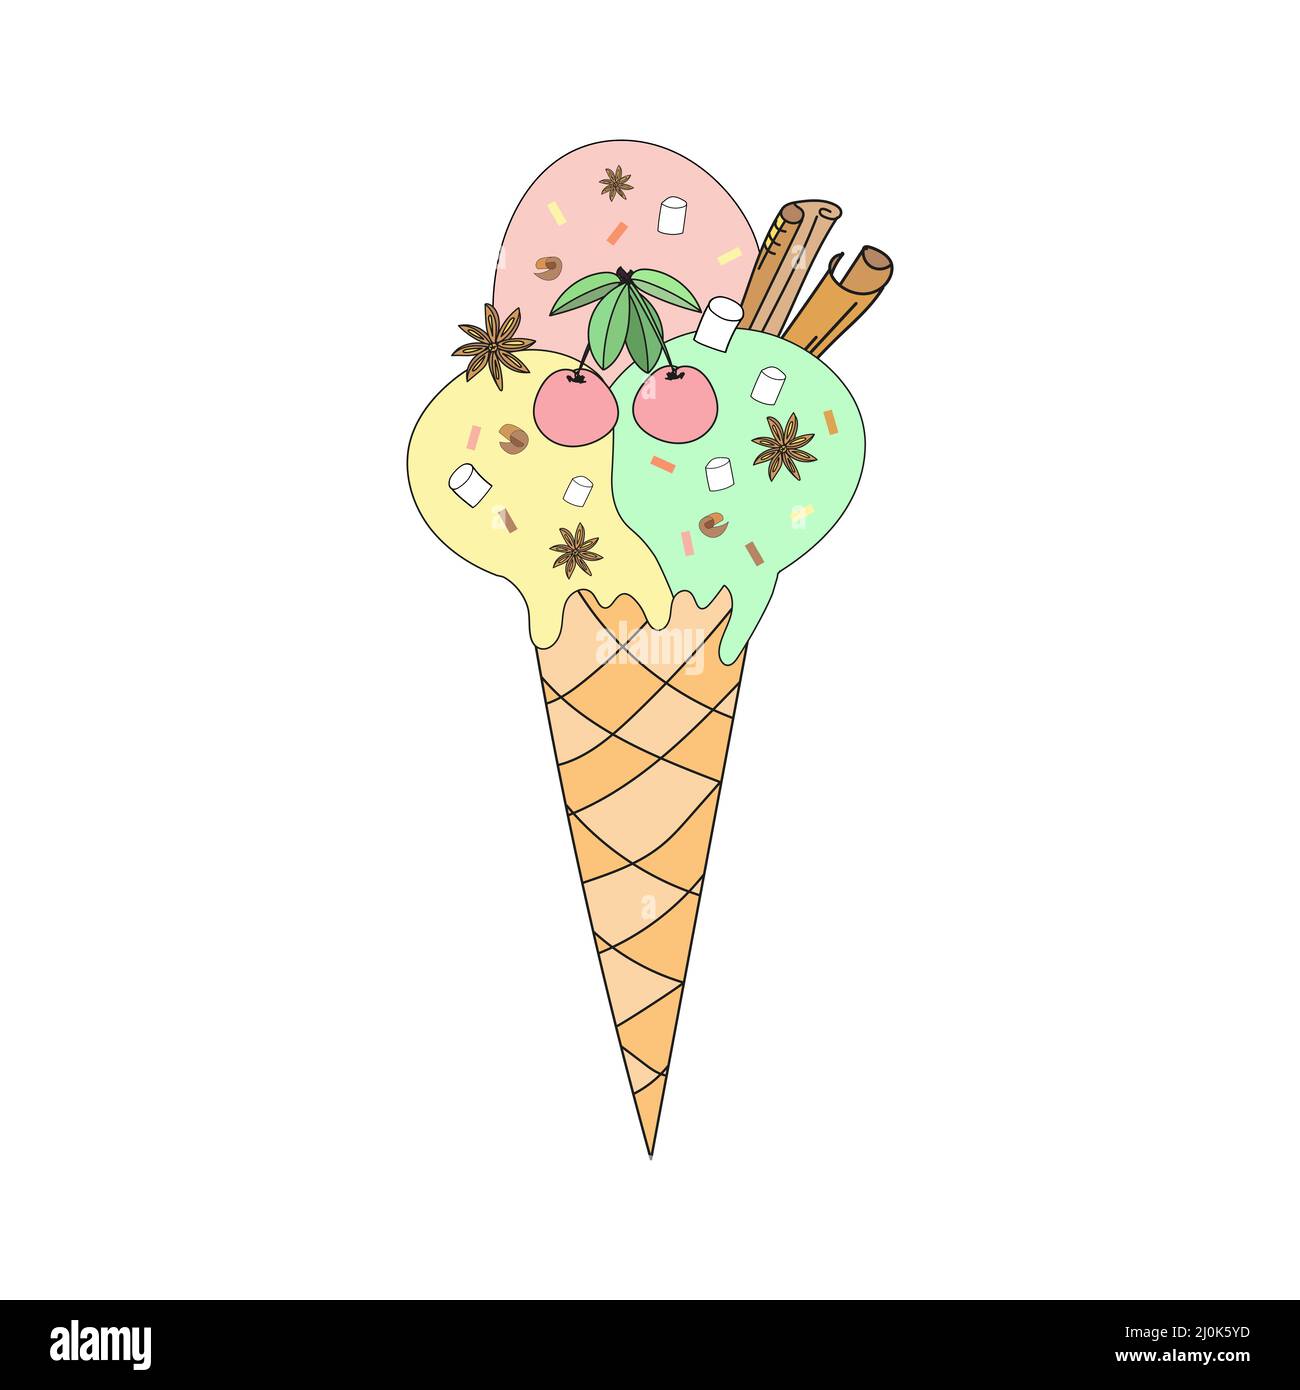 Eiskegel mit Kirsche und Zimt. Vektorgrafik im Doodle-Stil. Stock Vektor